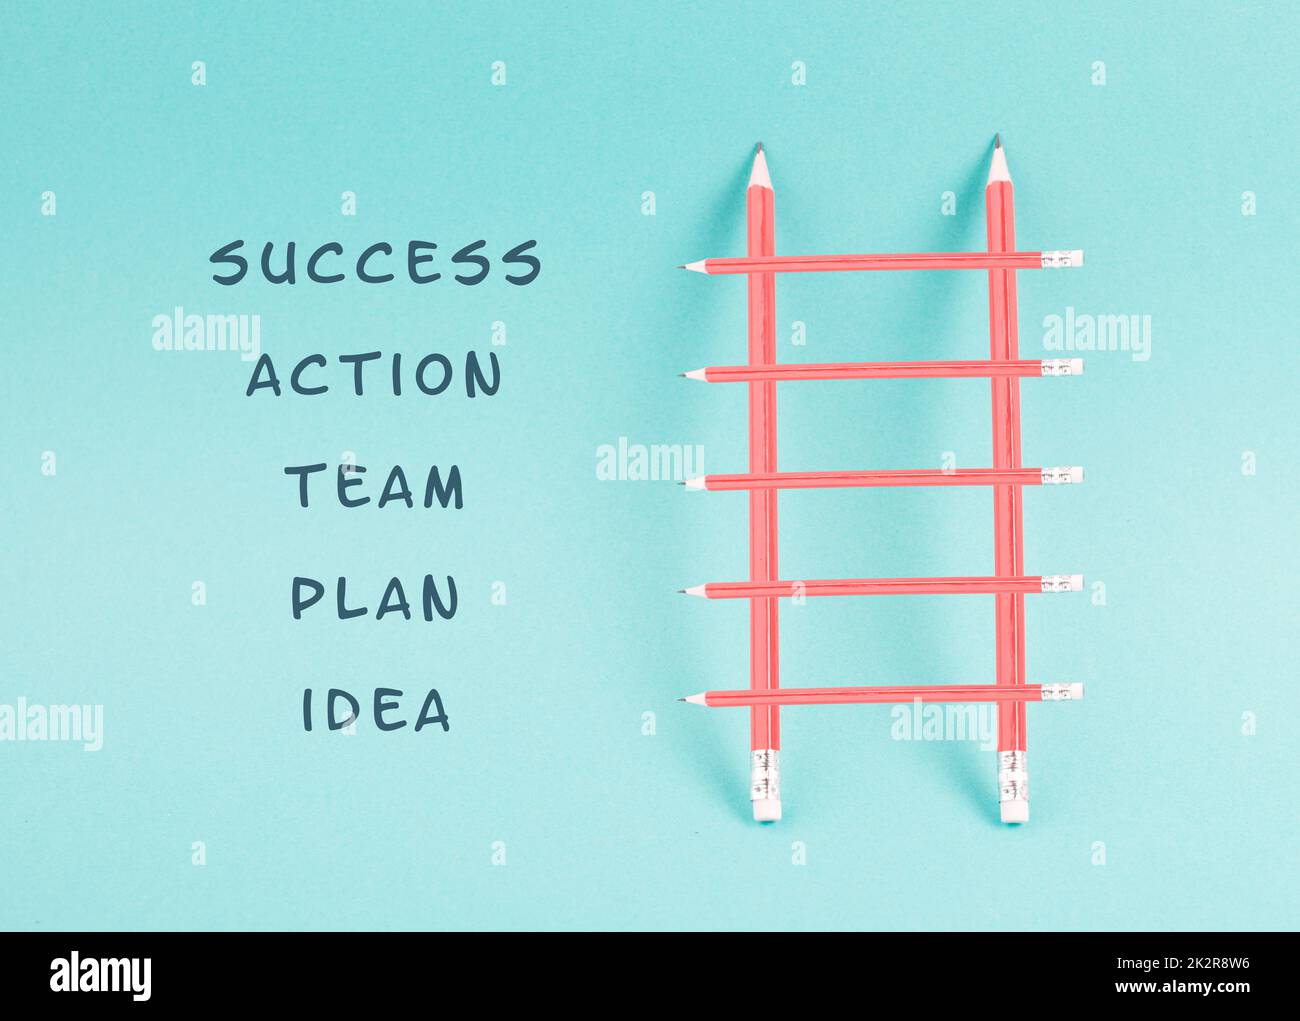 Échelle de succès, avoir une idée, planifier une stratégie, travail d'équipe pour la réussite étape par étape concept, progrès dans les affaires et l'éducation, ont un but Banque D'Images